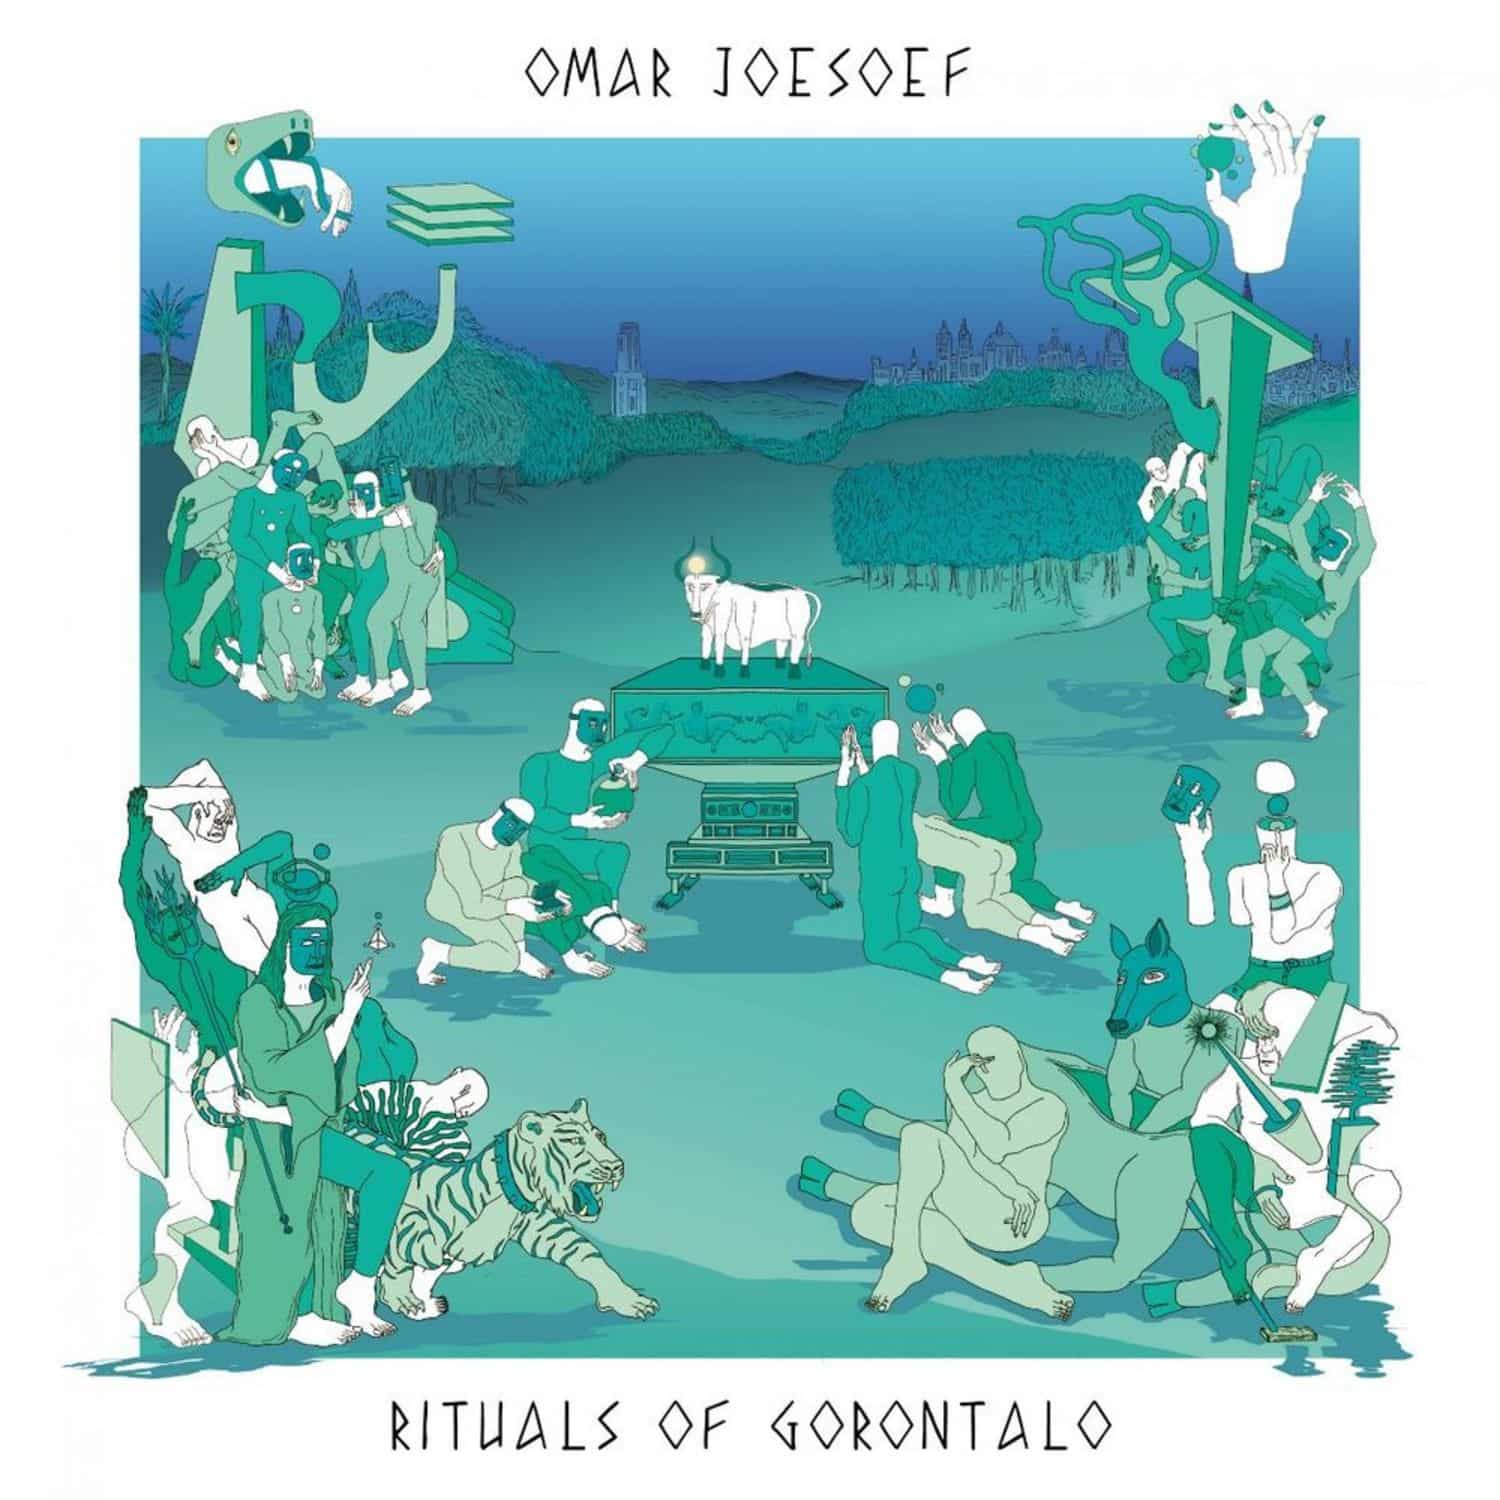 Omar Joesoef - RITUALS OF GORONTALO EP